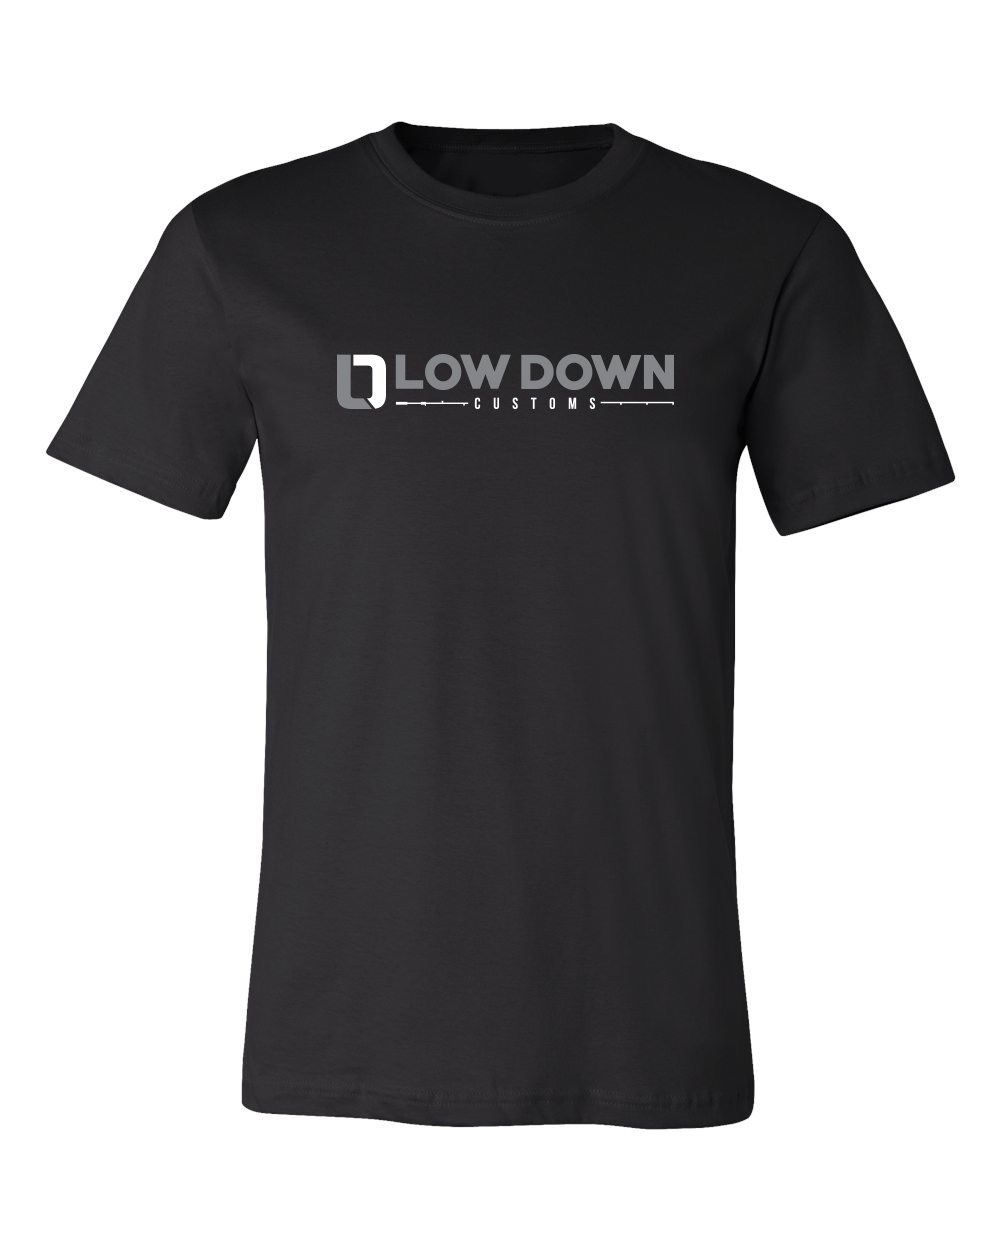 画像1: 【LOW DOWN CUSTOMS】Low Down Custom Rods Shirt In Black (1)